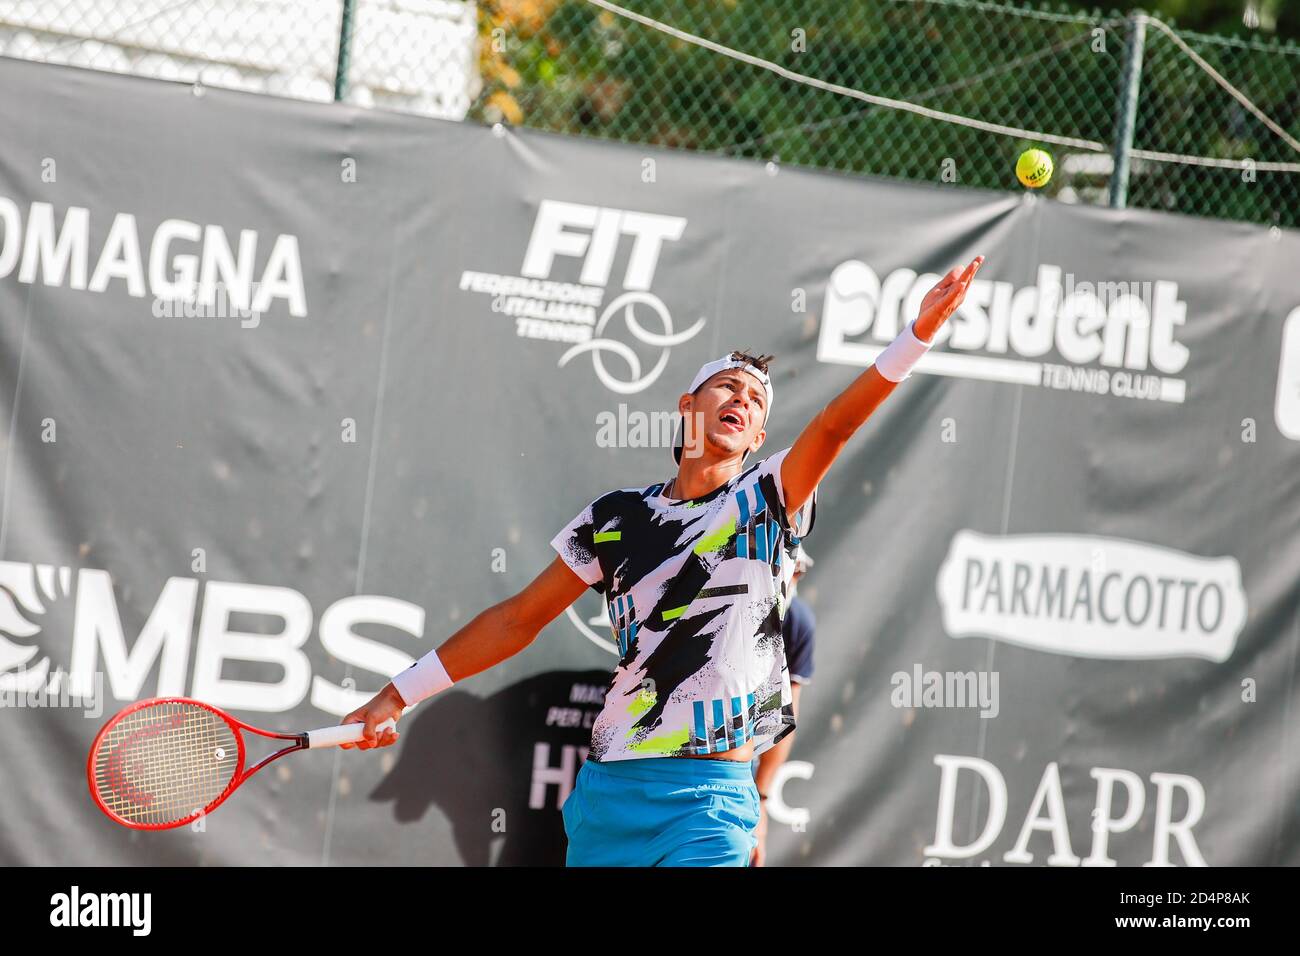 Lexei Popyrin durante l'ATP Challenger 125 - internazionali Emilia Romagna, Tennis internazionali, parma, Italia, 09 Oct 2020 Credit: LM/Roberta Corradin Foto Stock